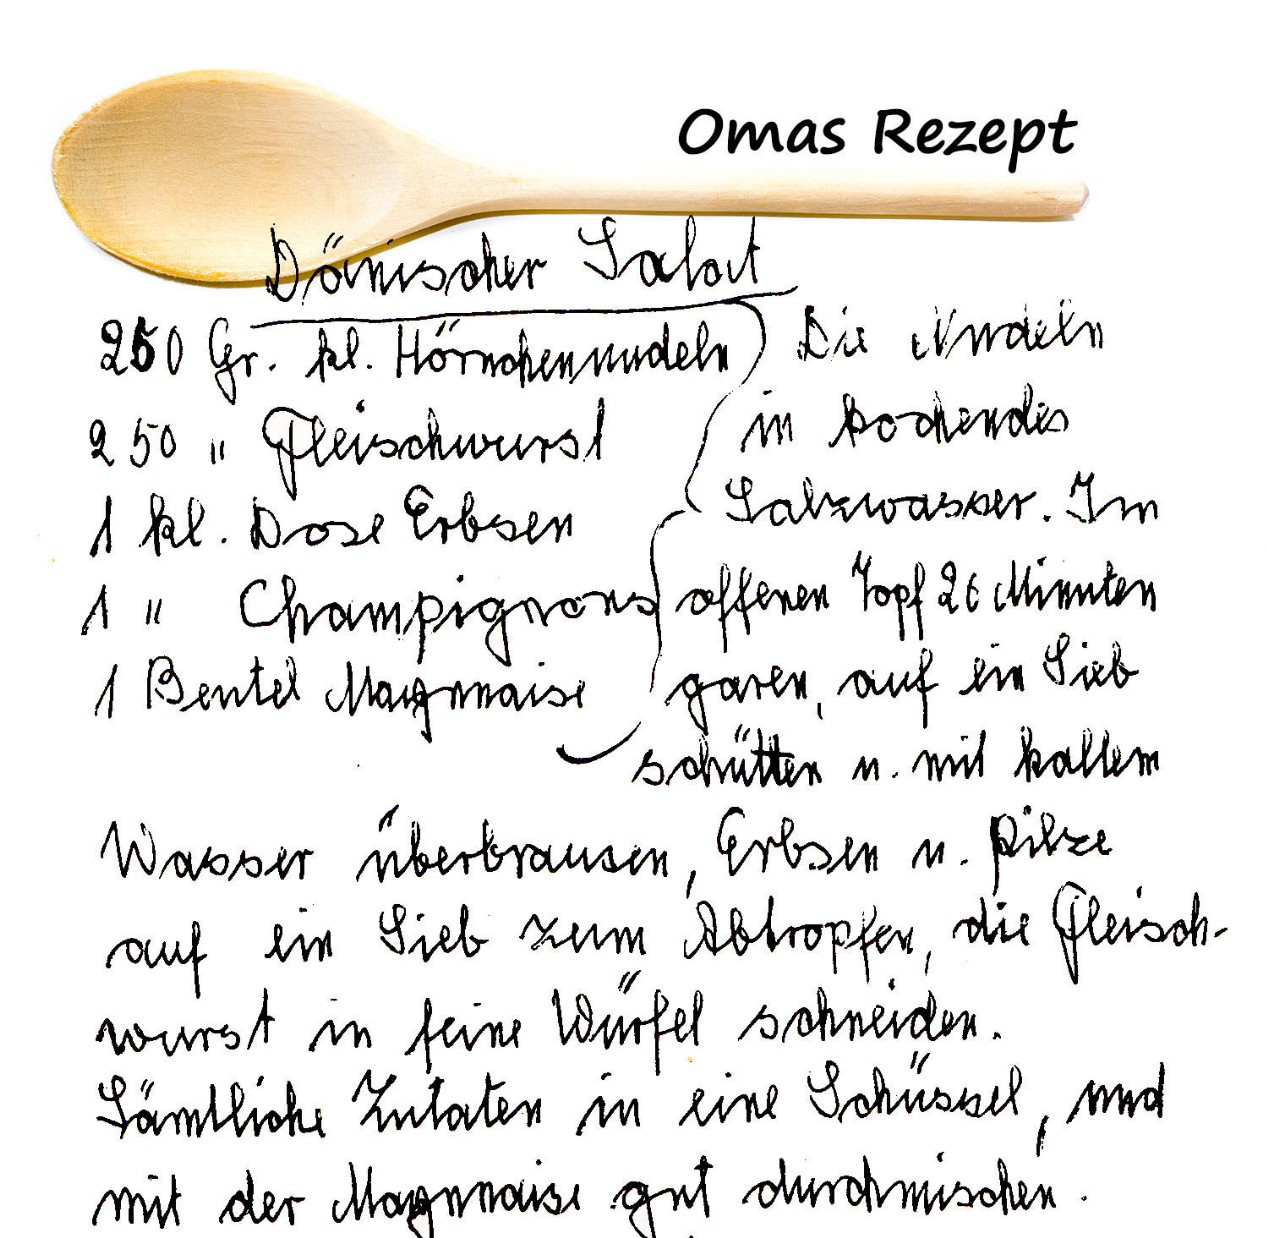 Handgeschriebenes Rezept von der Oma Dörmischer Salat